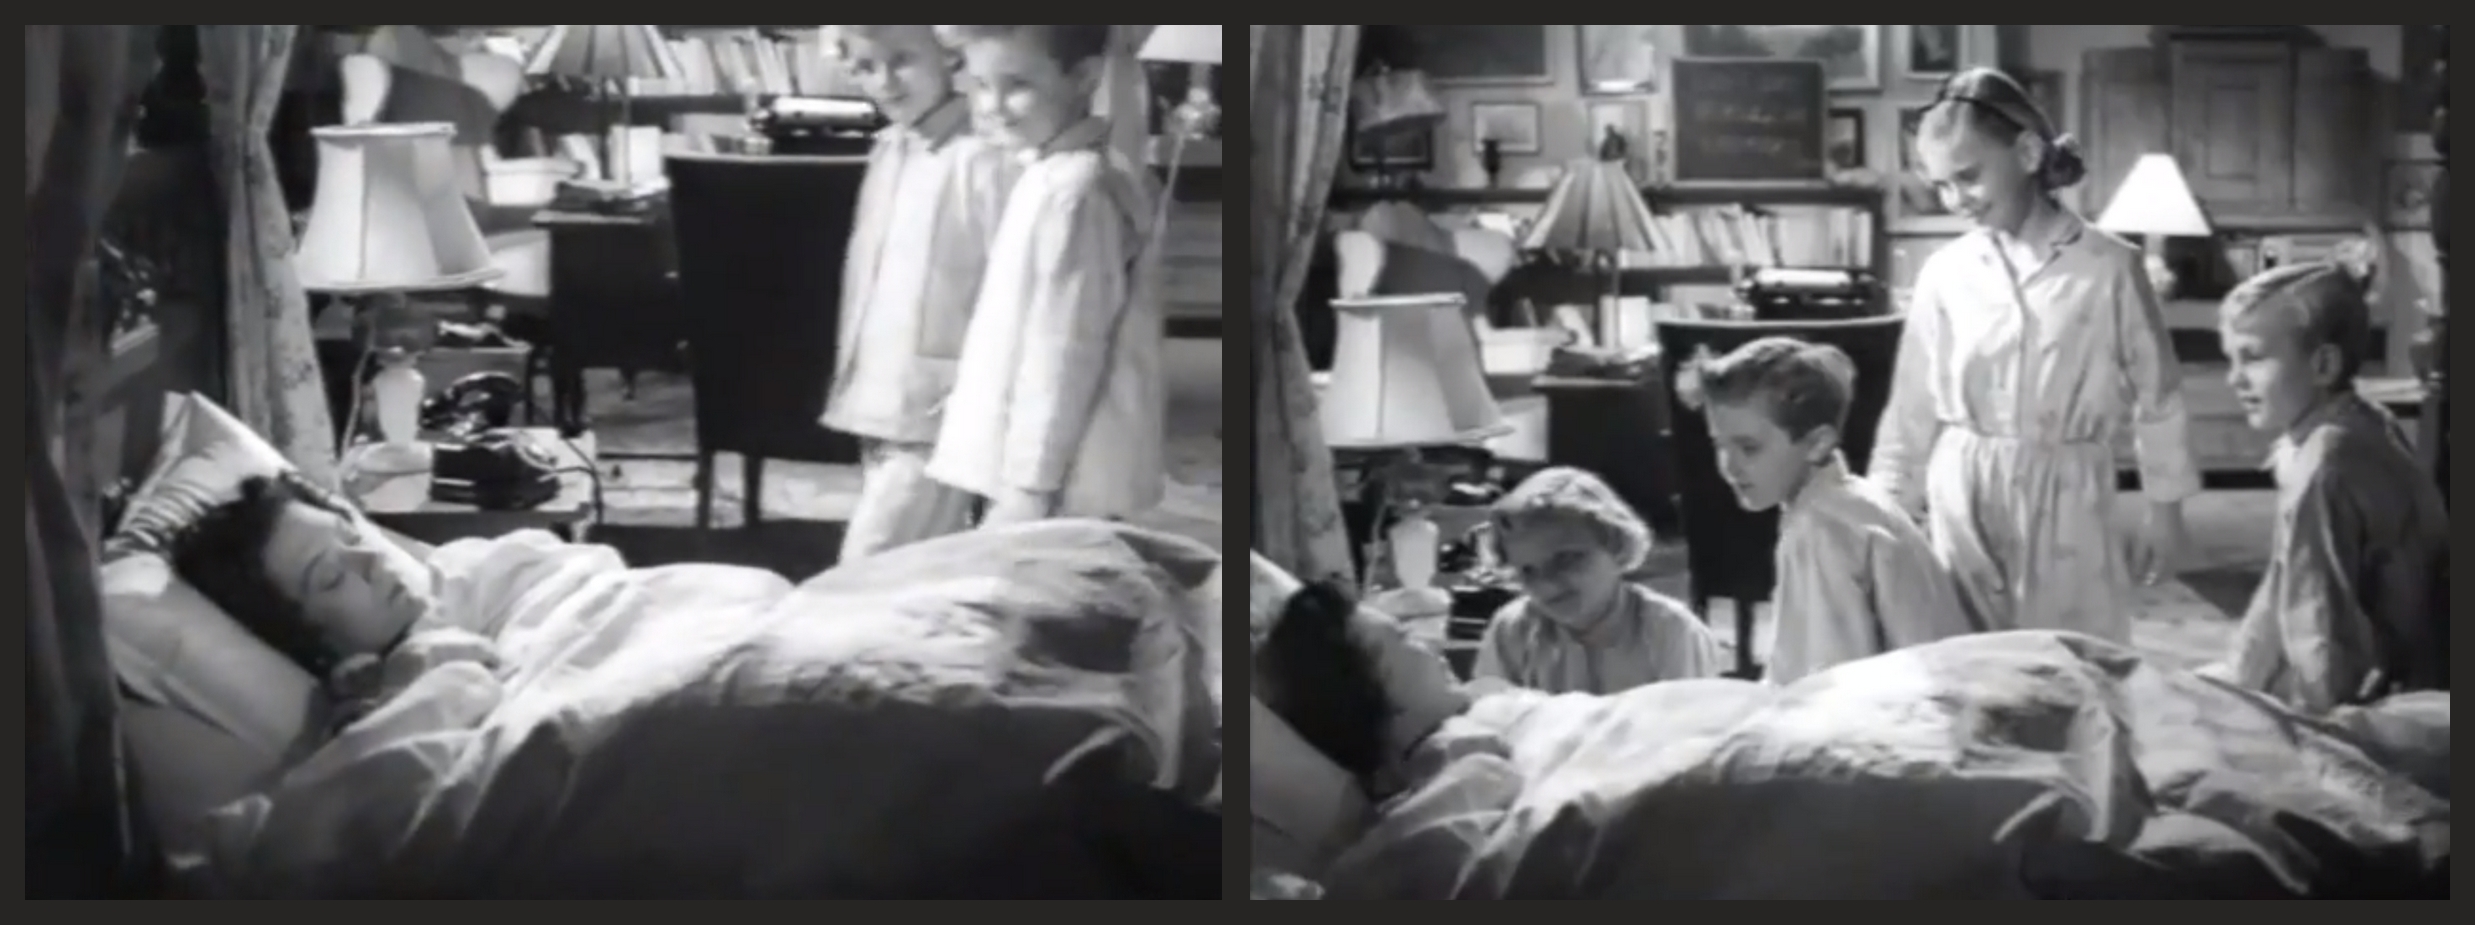 Hold fingrene fra mor (1951) Screenshot 3 